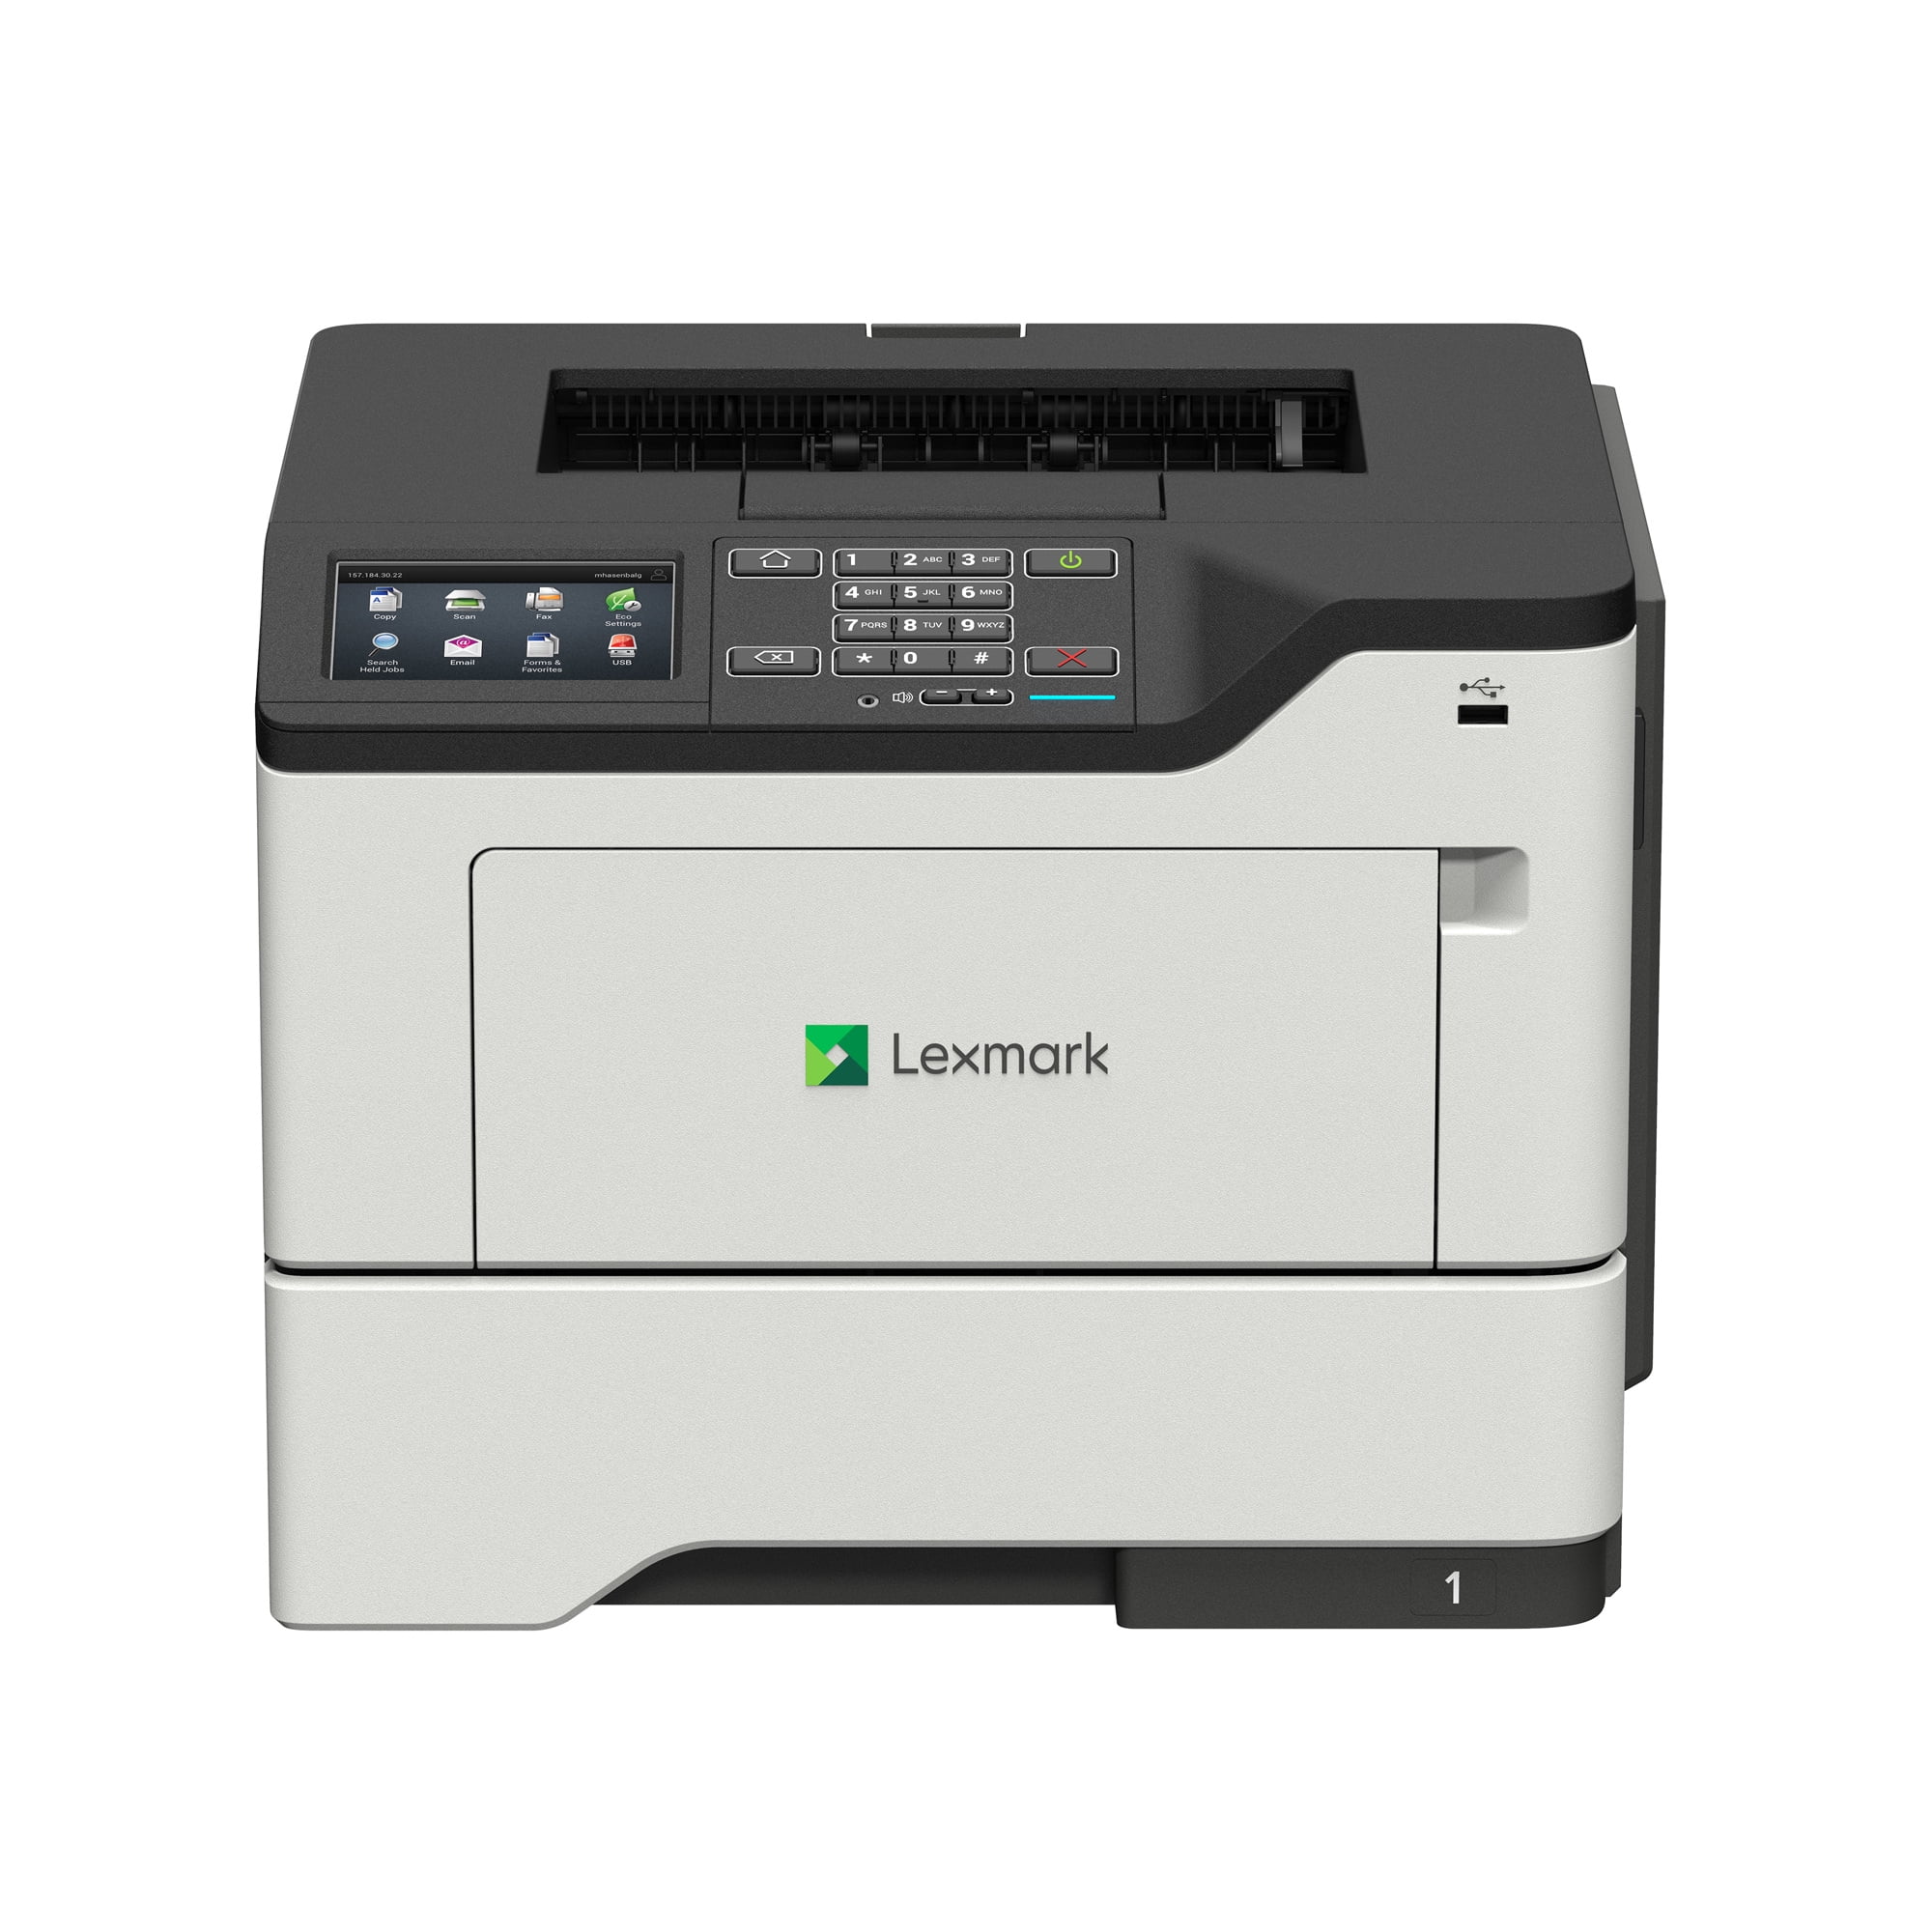 Picture of Lexmark 36S0500 MS622de Monochrome Laser Printer - Gray